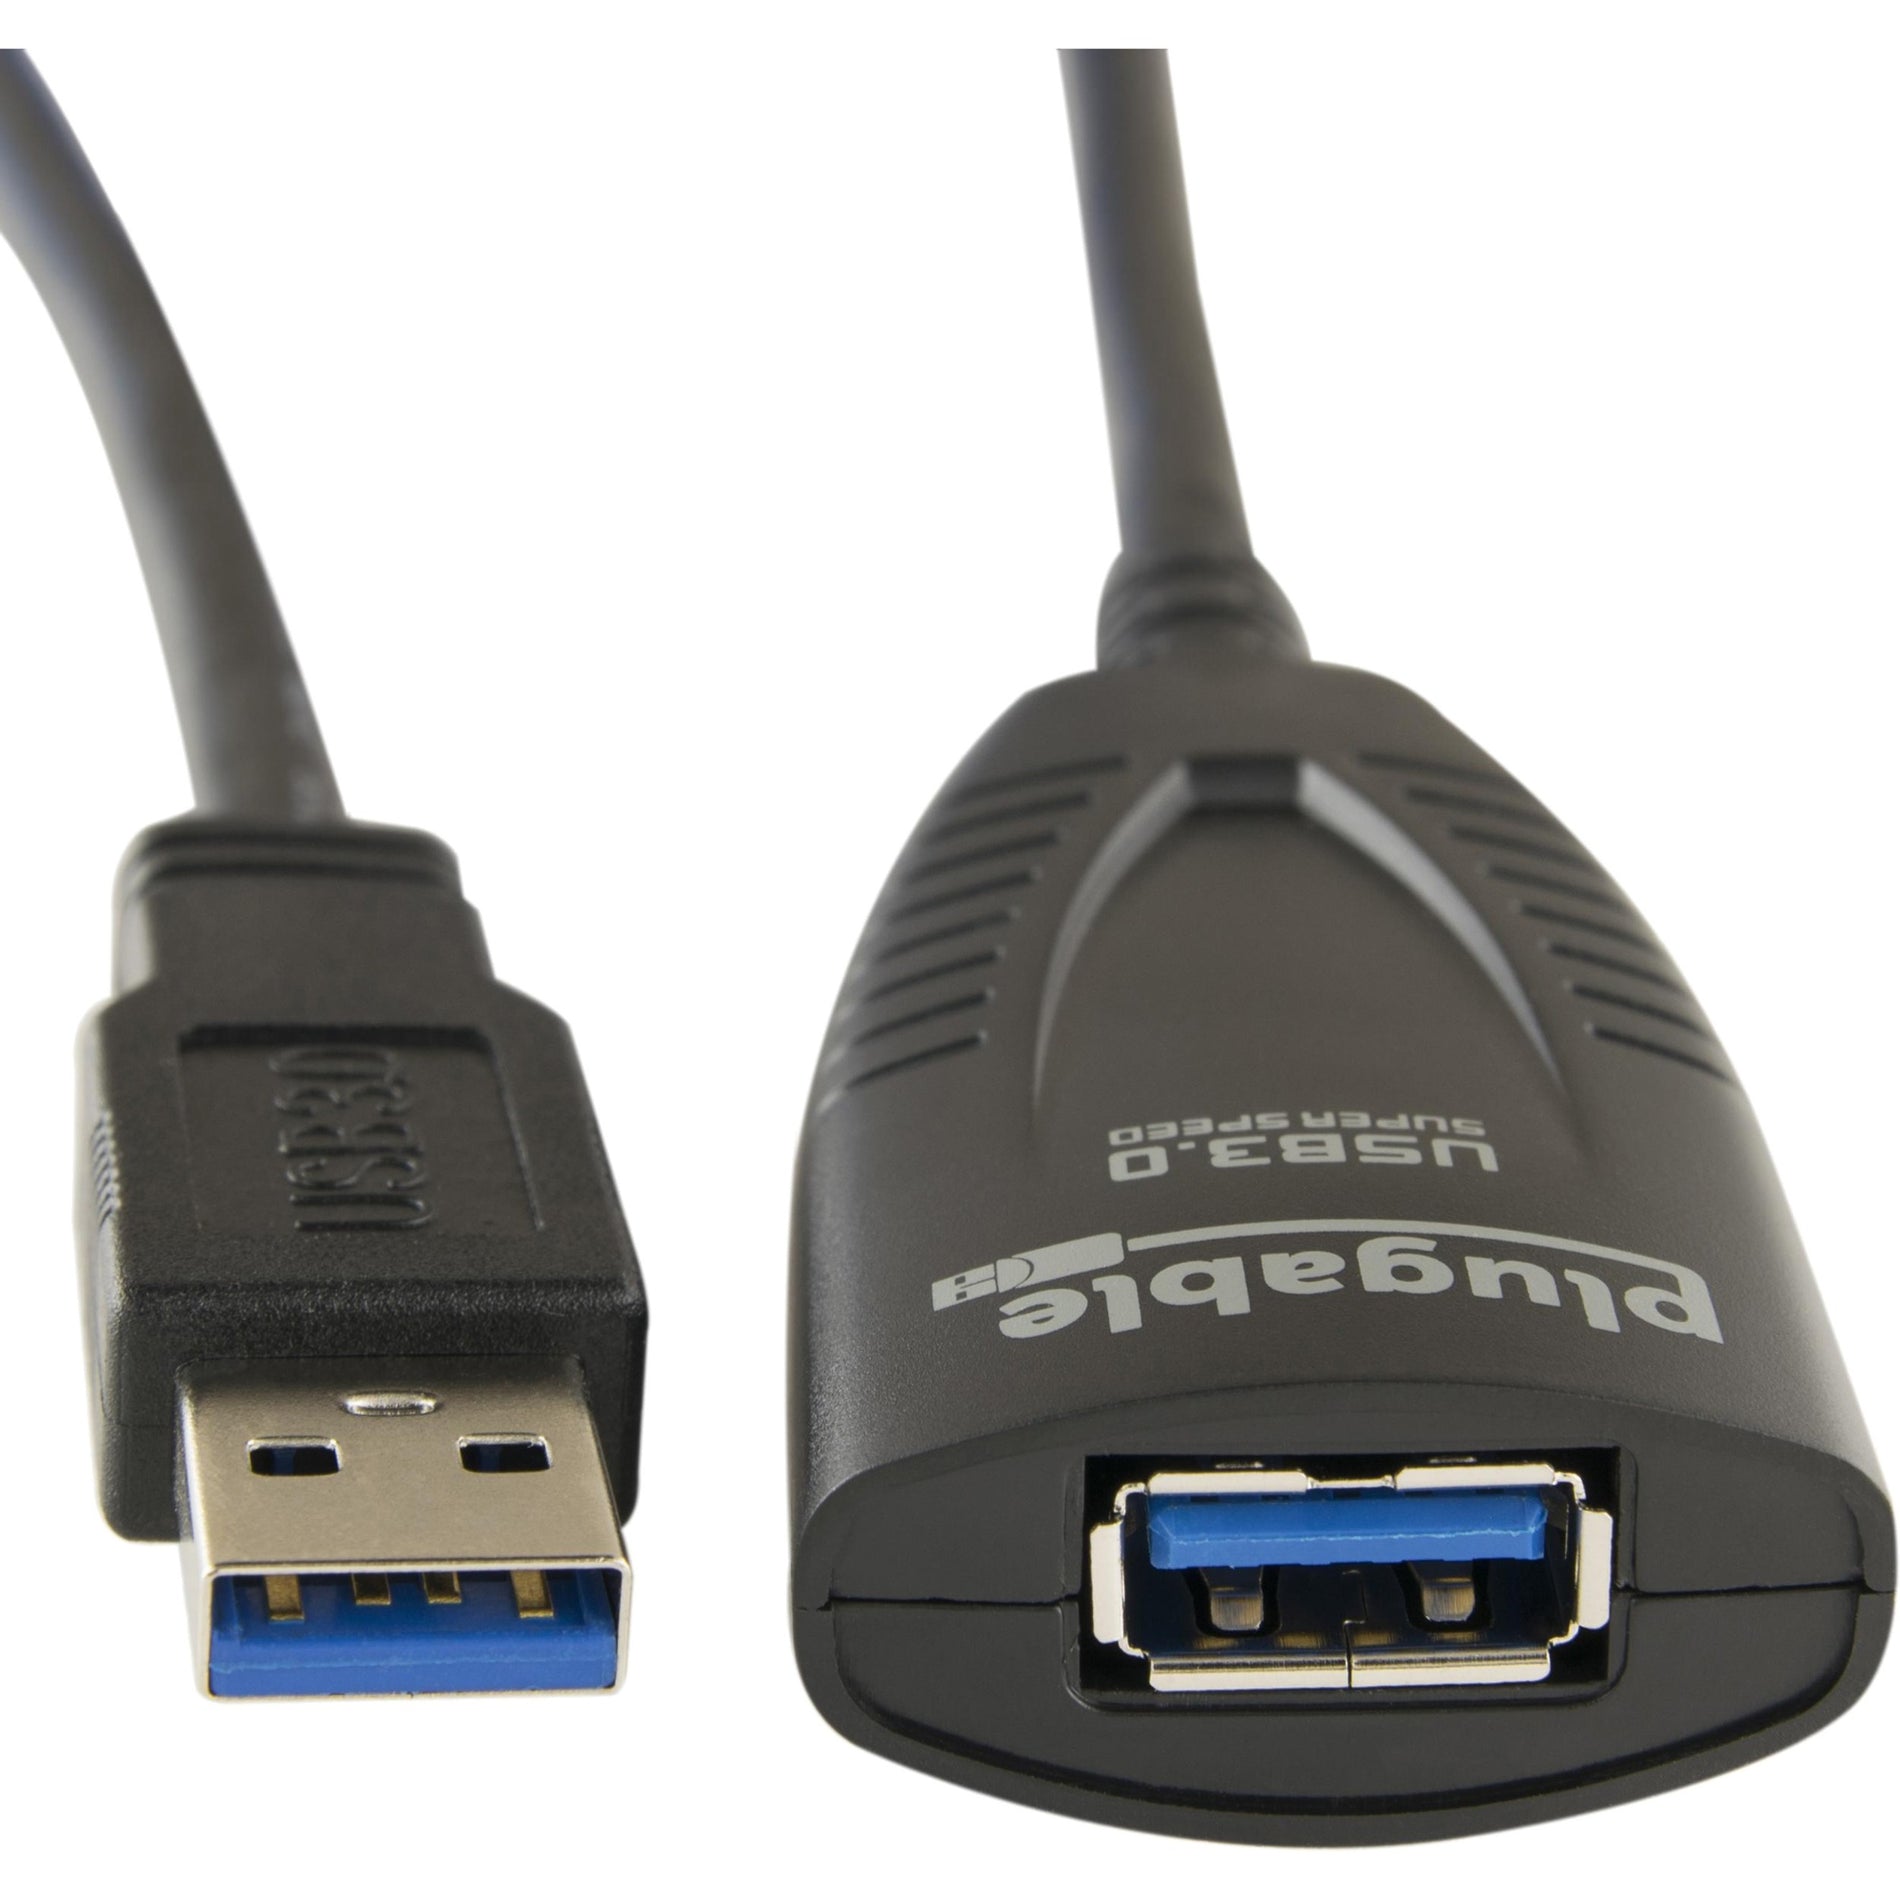 Plugable USB3-5M-D USB 3.0 5M (16ft) Verlängerungskabel mit Netzteil Verlängern Sie Ihre USB-Verbindung mühelos